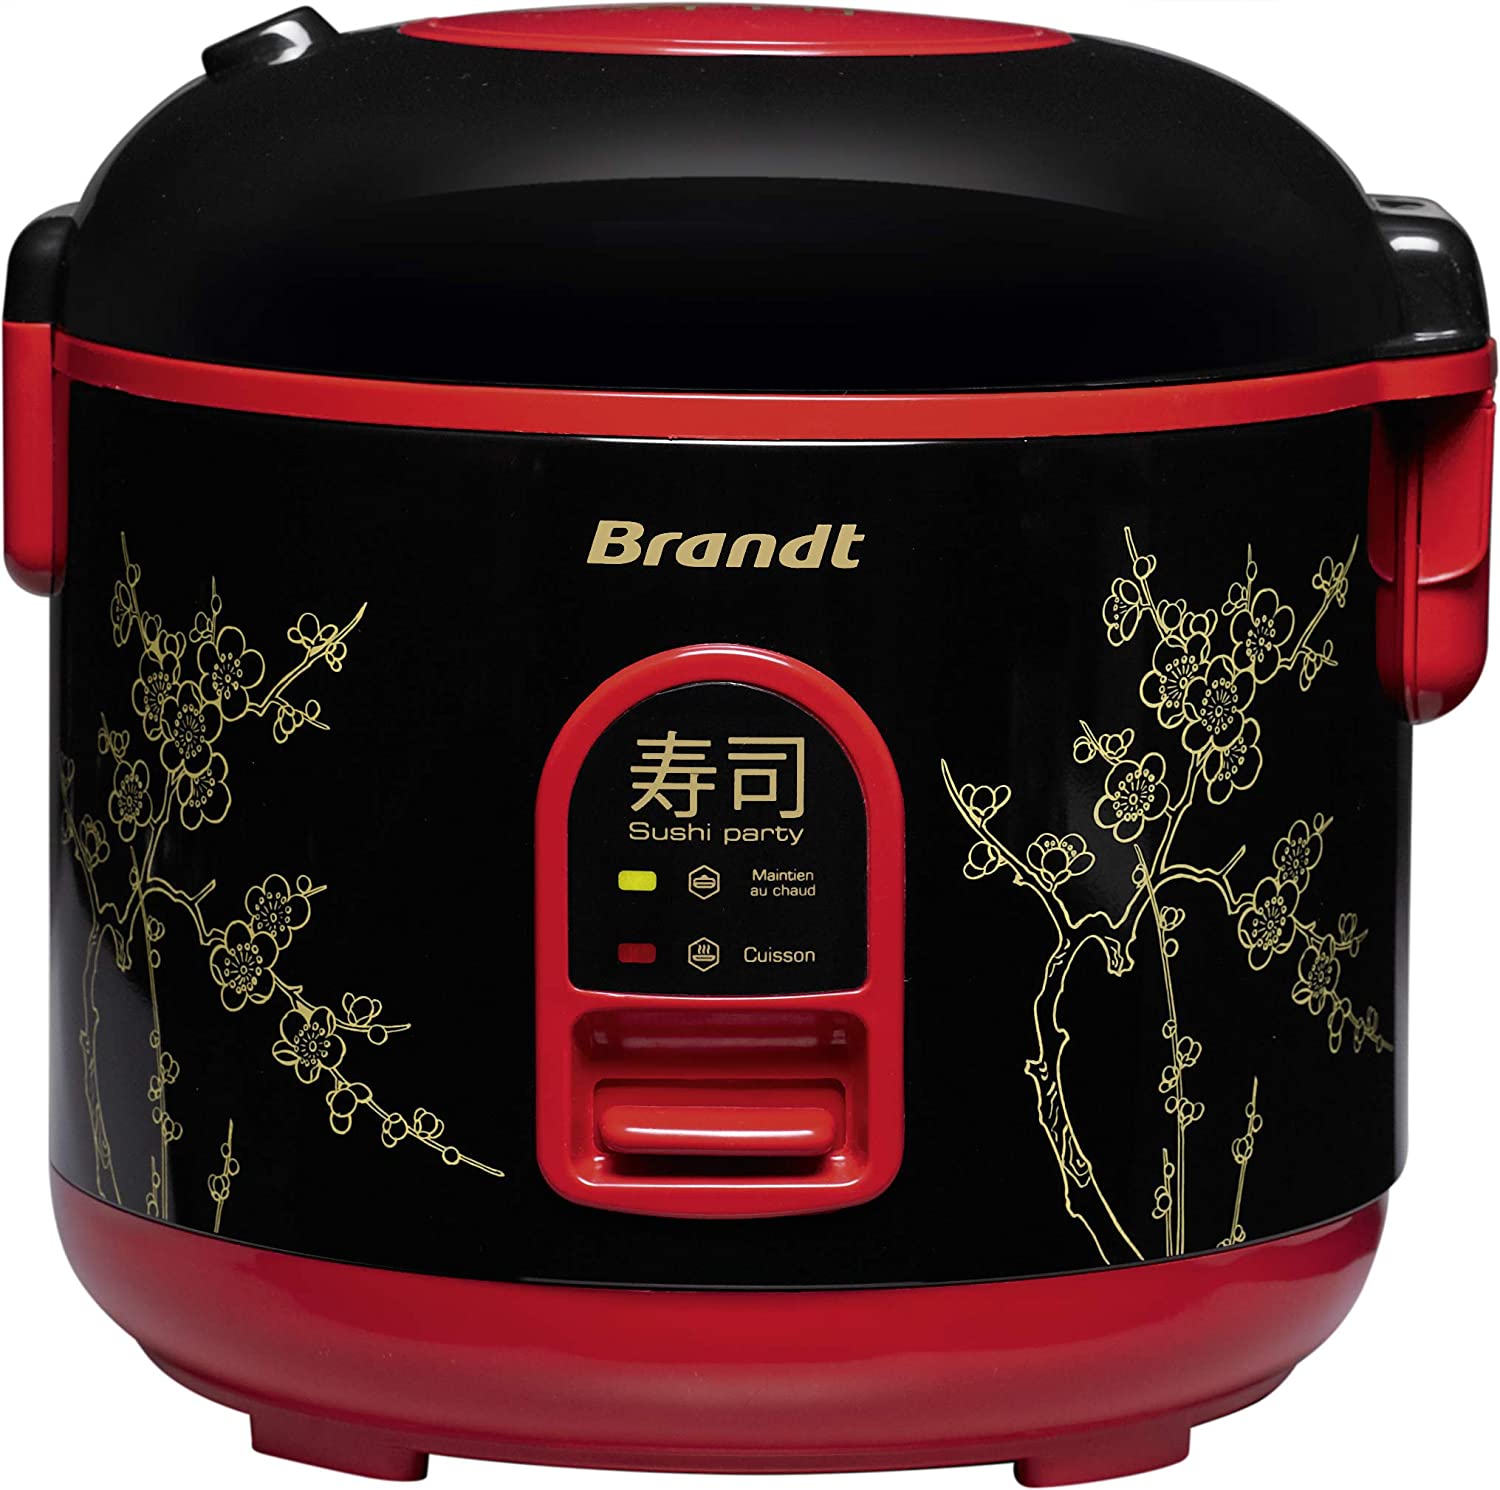 Brandt : multi-cuiseur riz électrique accompagné d’un kit sushi